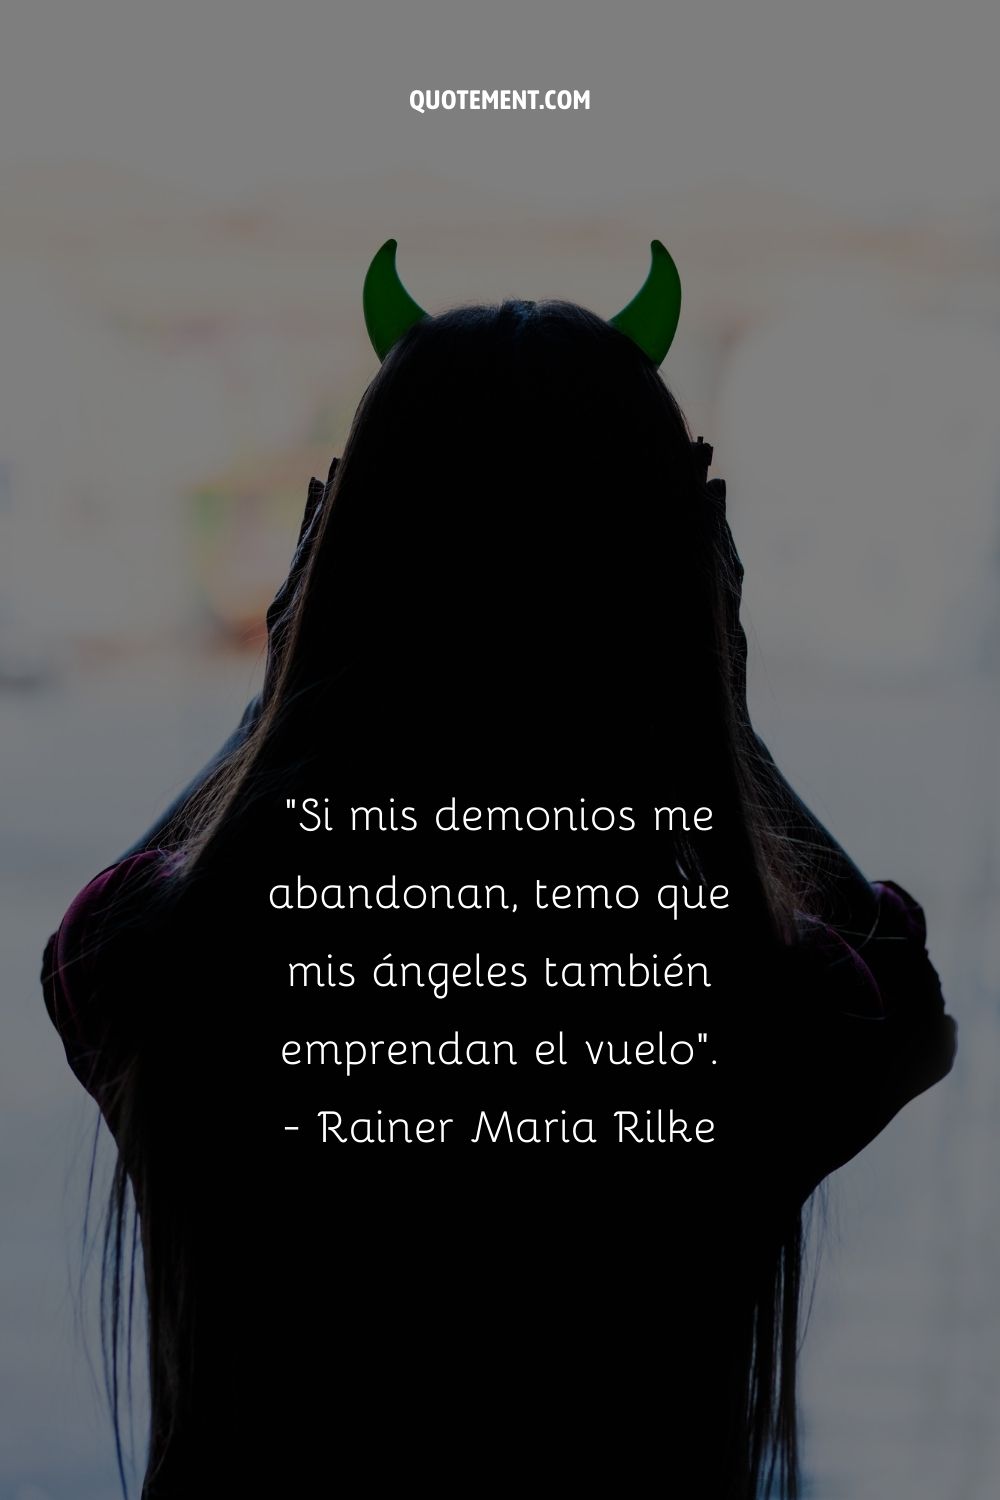 "Si mis demonios me abandonan, temo que mis ángeles también emprendan el vuelo". - Rainer Maria Rilke